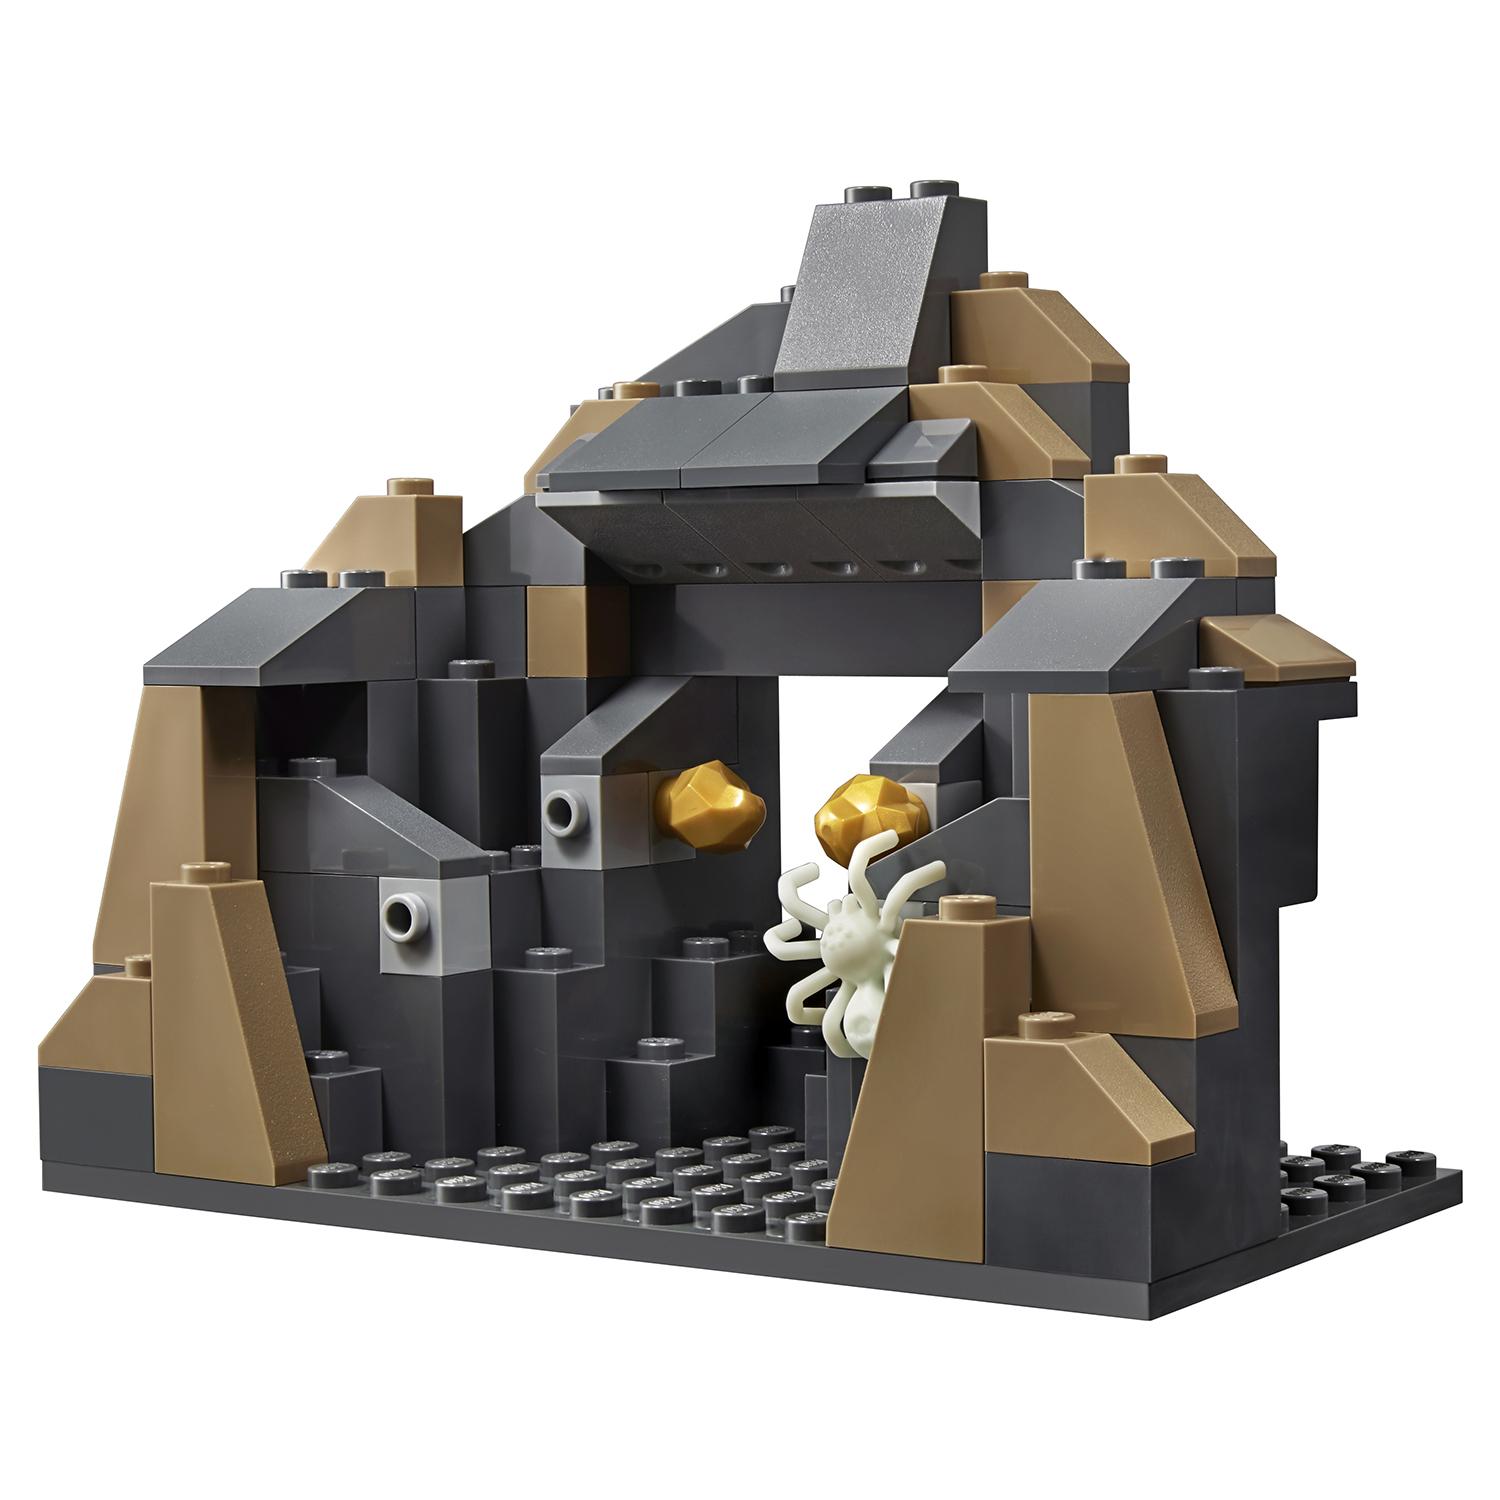 Lego City 60186 Тяжелый бур для горных работ